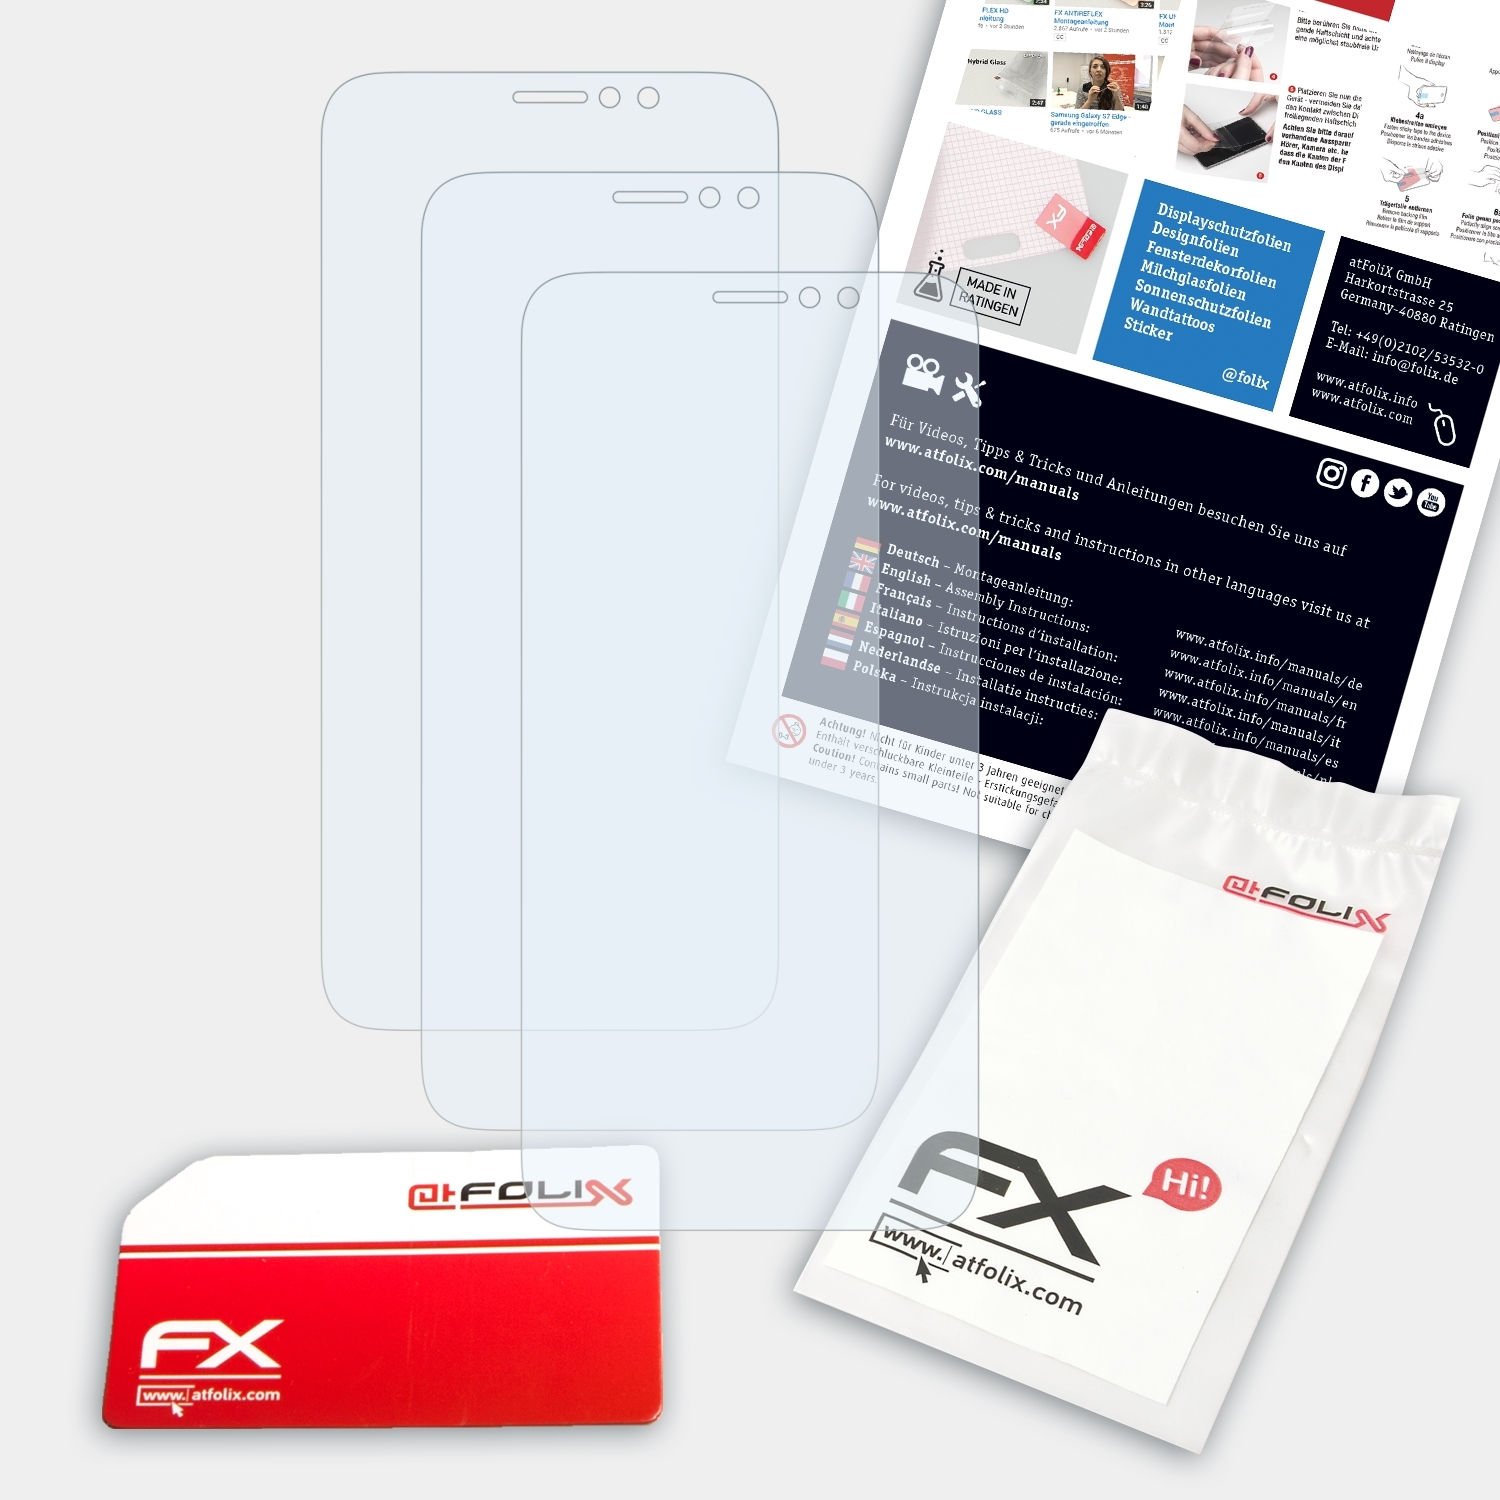 ATFOLIX 3x FX-Clear Displayschutz(für C7) TP-Link Neffos